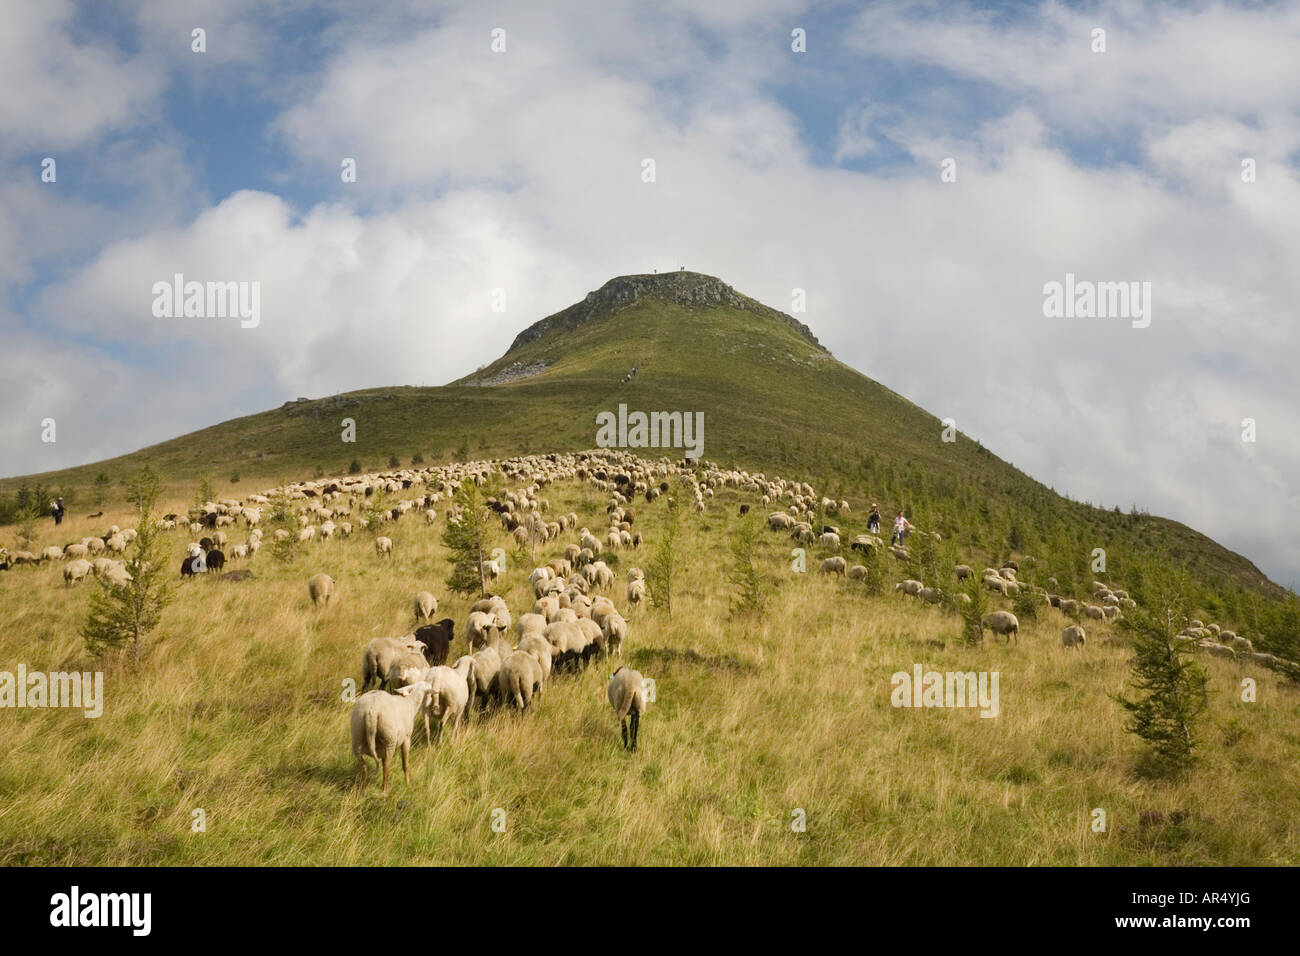 A flock of sheep (Ovis aries) at the Puy de Chambourguet base.Troupeau de moutons (Ovis aries) au pied du Puy de Chambourguet. Stock Photo